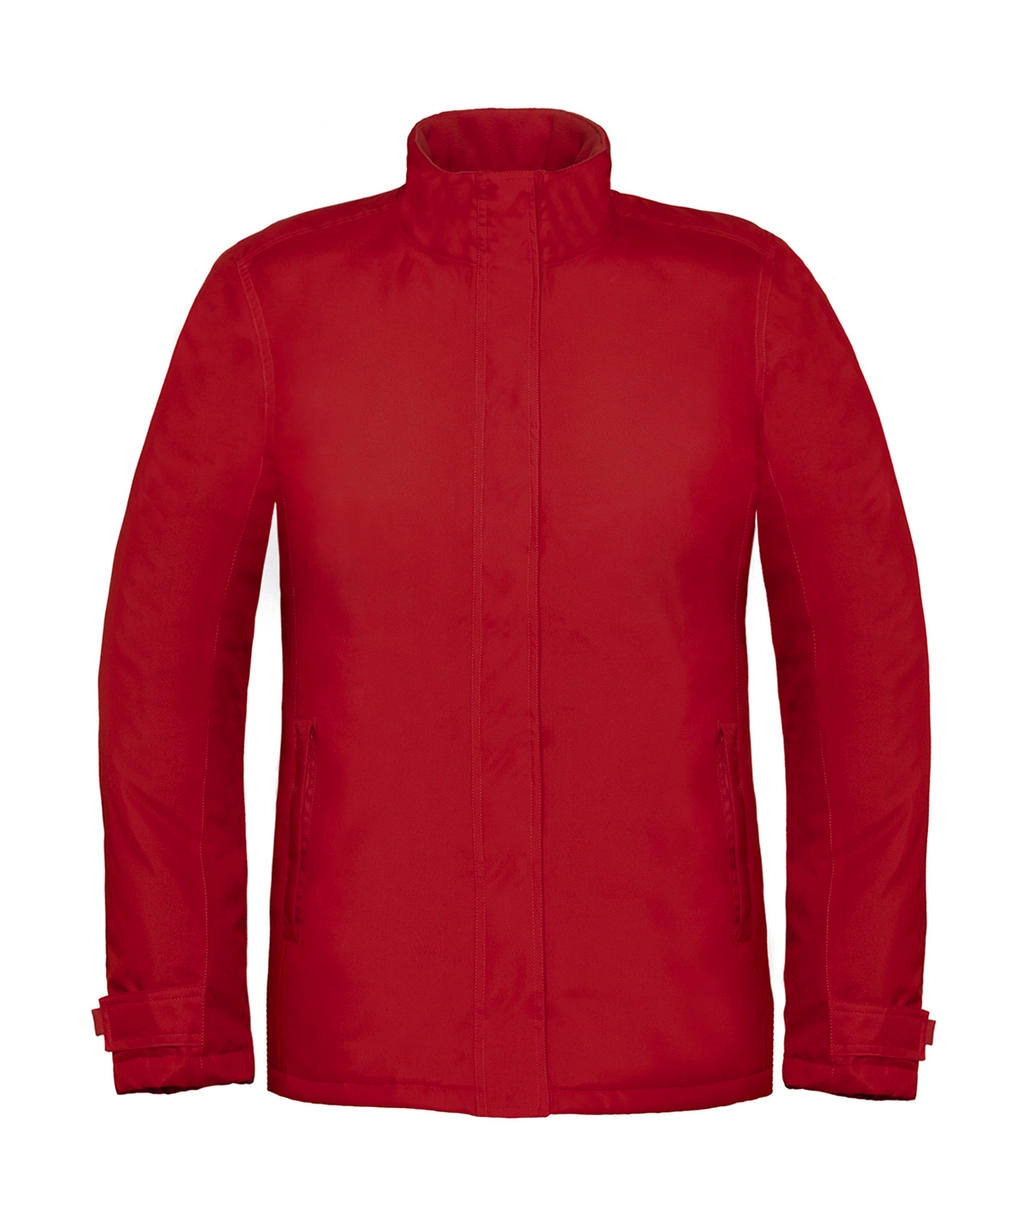 Real+/women Heavy Weight Jacket zum Besticken und Bedrucken in der Farbe Deep Red mit Ihren Logo, Schriftzug oder Motiv.